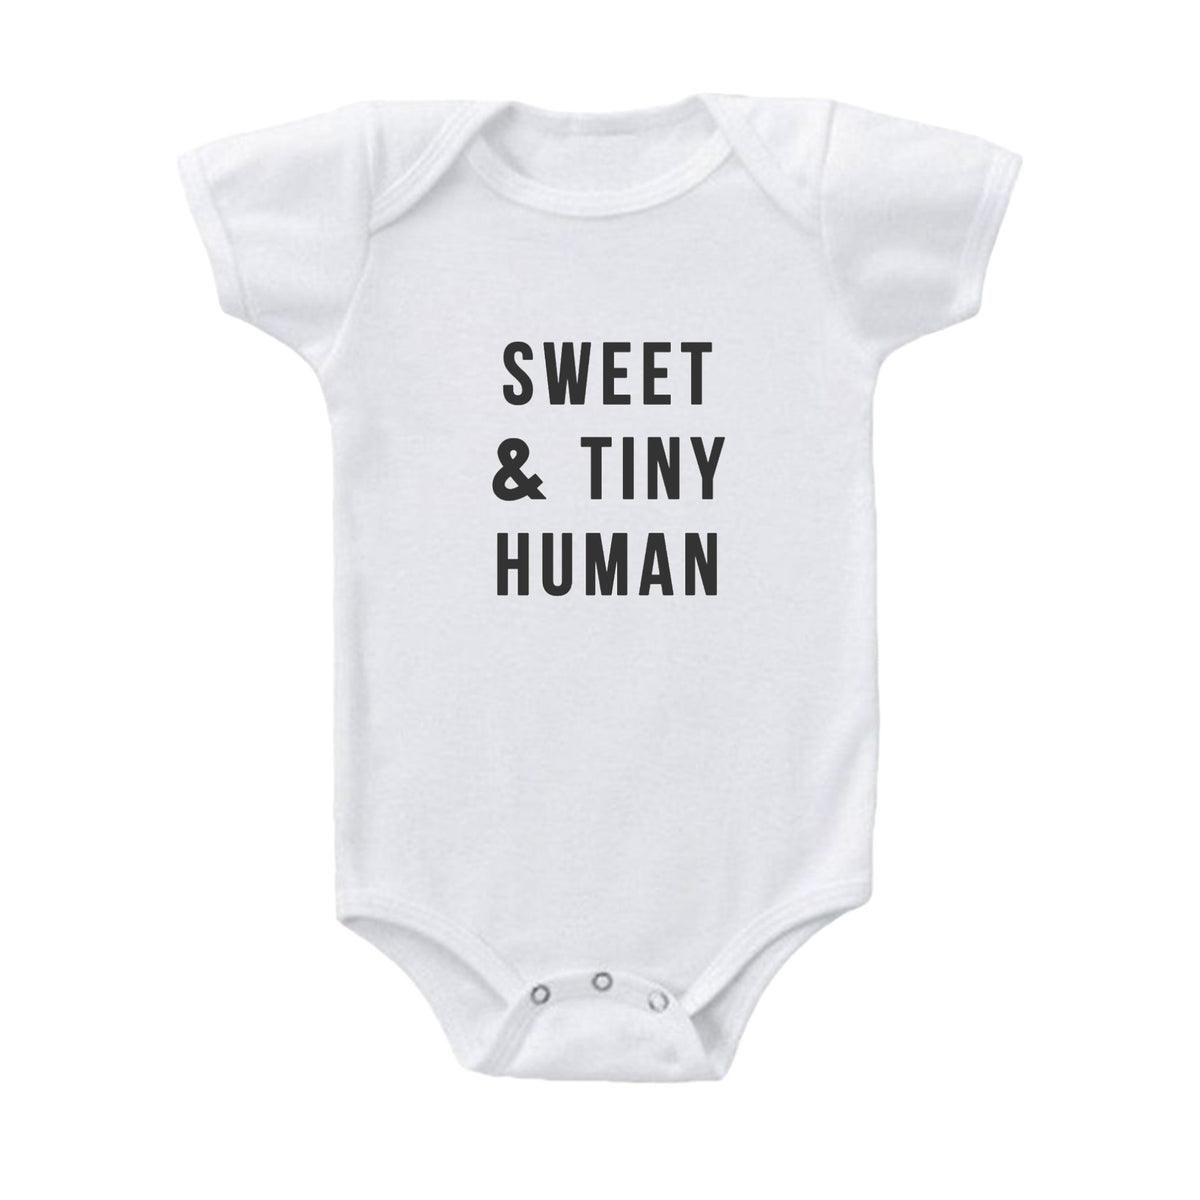 Sweet & Tiny Human Baby Onesie